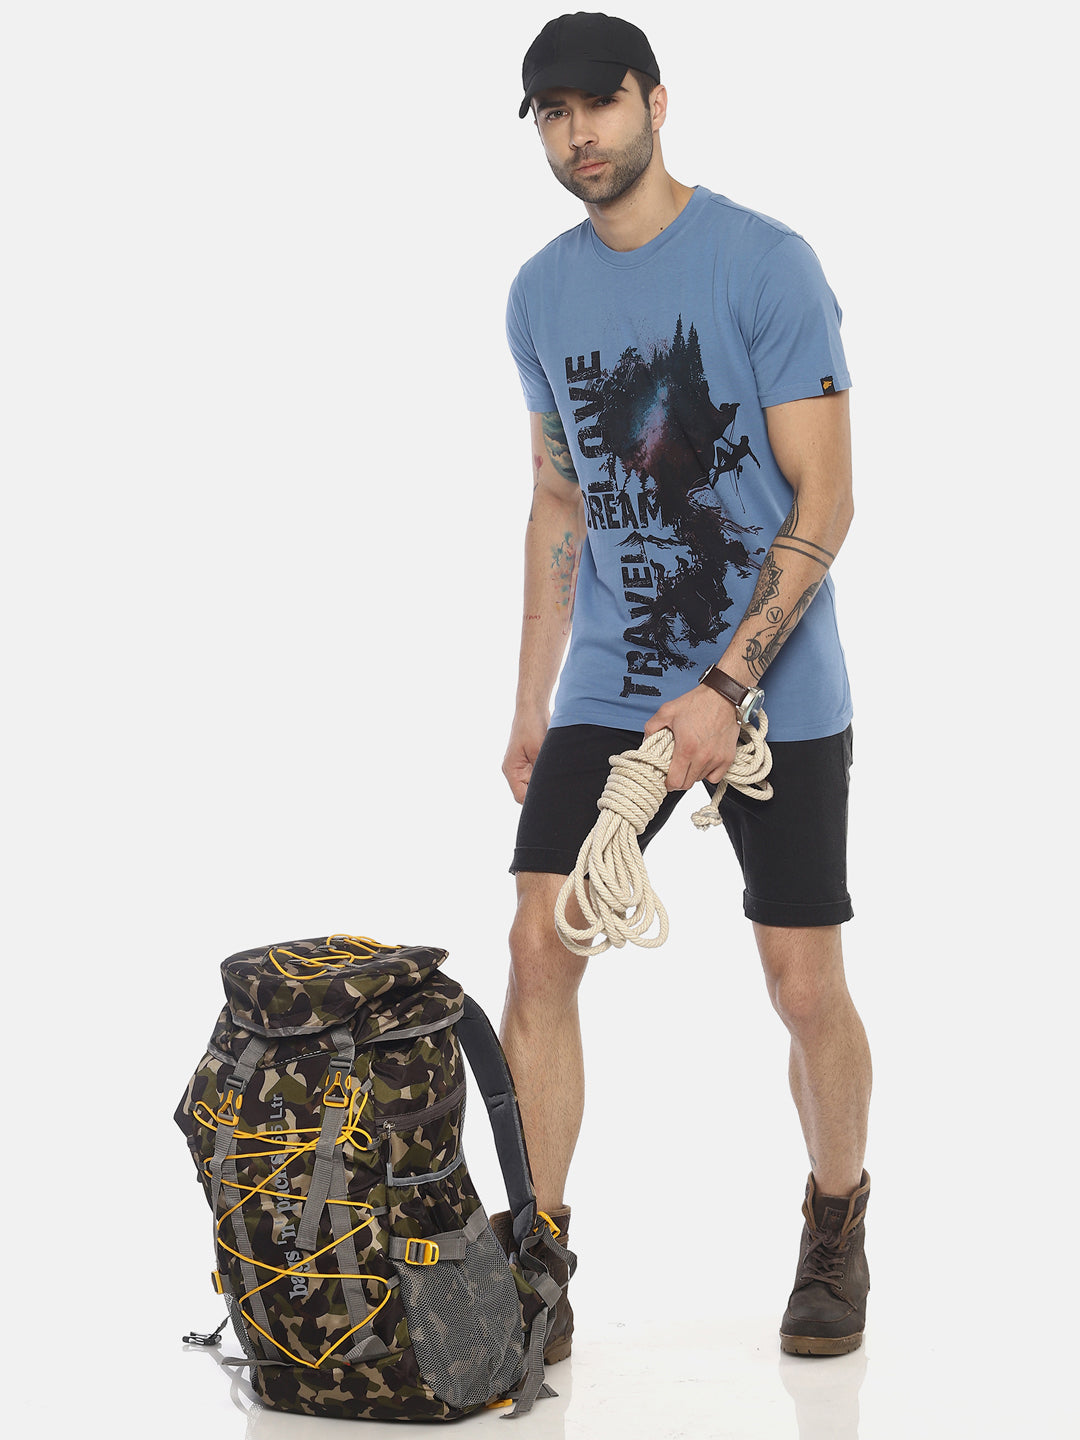 Travel Dream Mid Vel Blue Printed Men T-Shirt Wolfpack